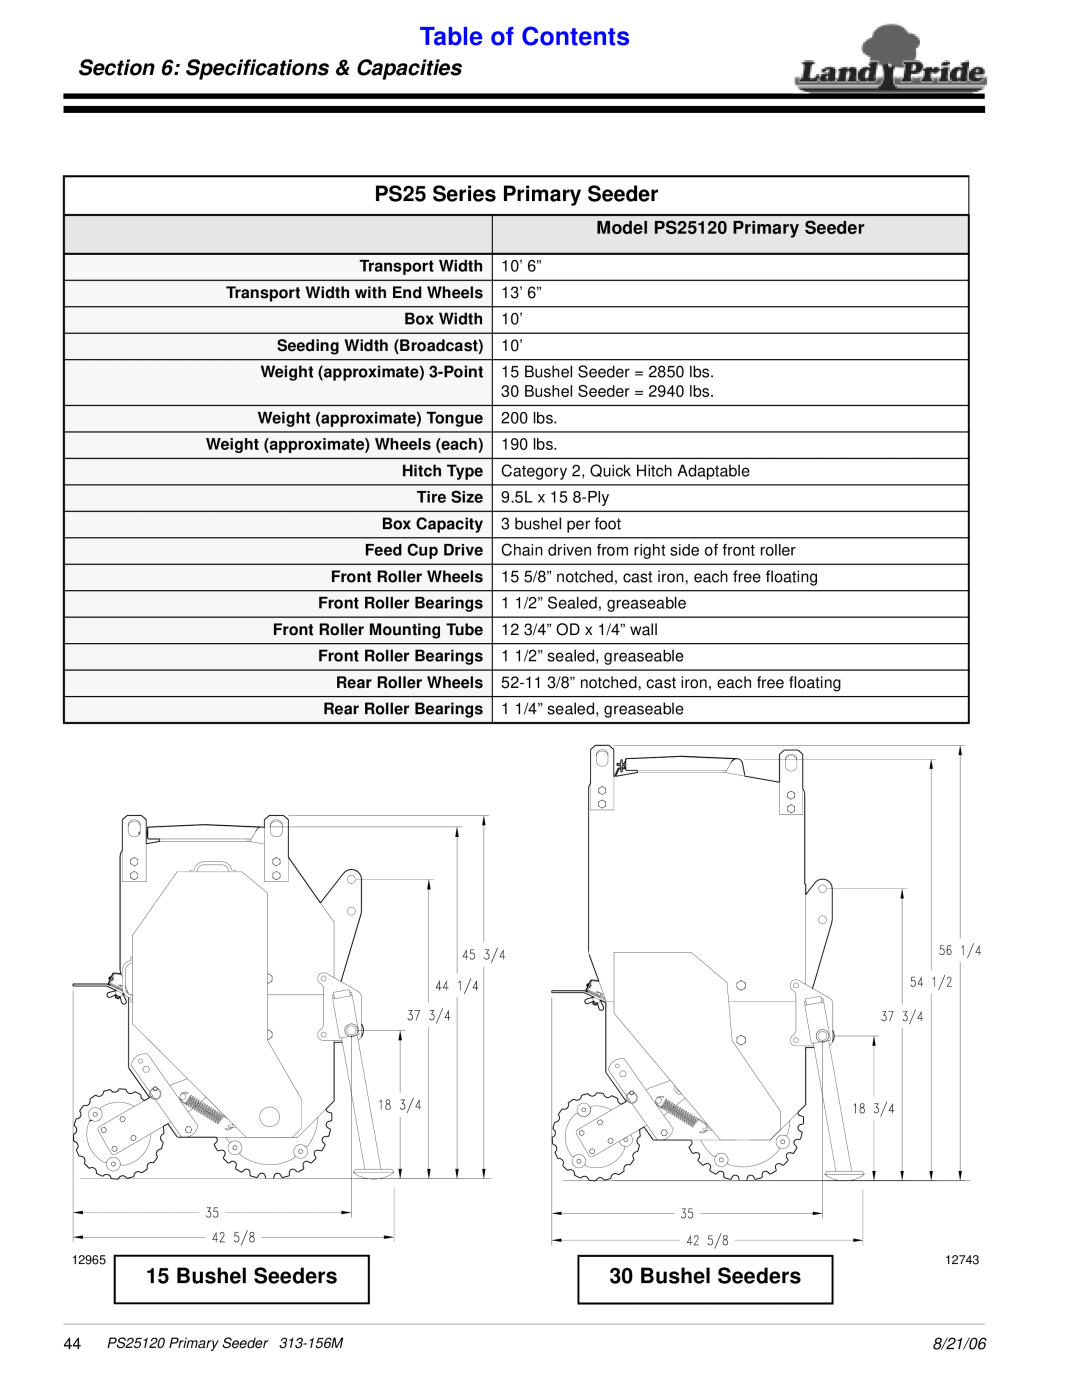 Land Pride manual Speciﬁcations & Capacities, PS25 Series Primary Seeder, Bushel Seeders, Model PS25120 Primary Seeder 